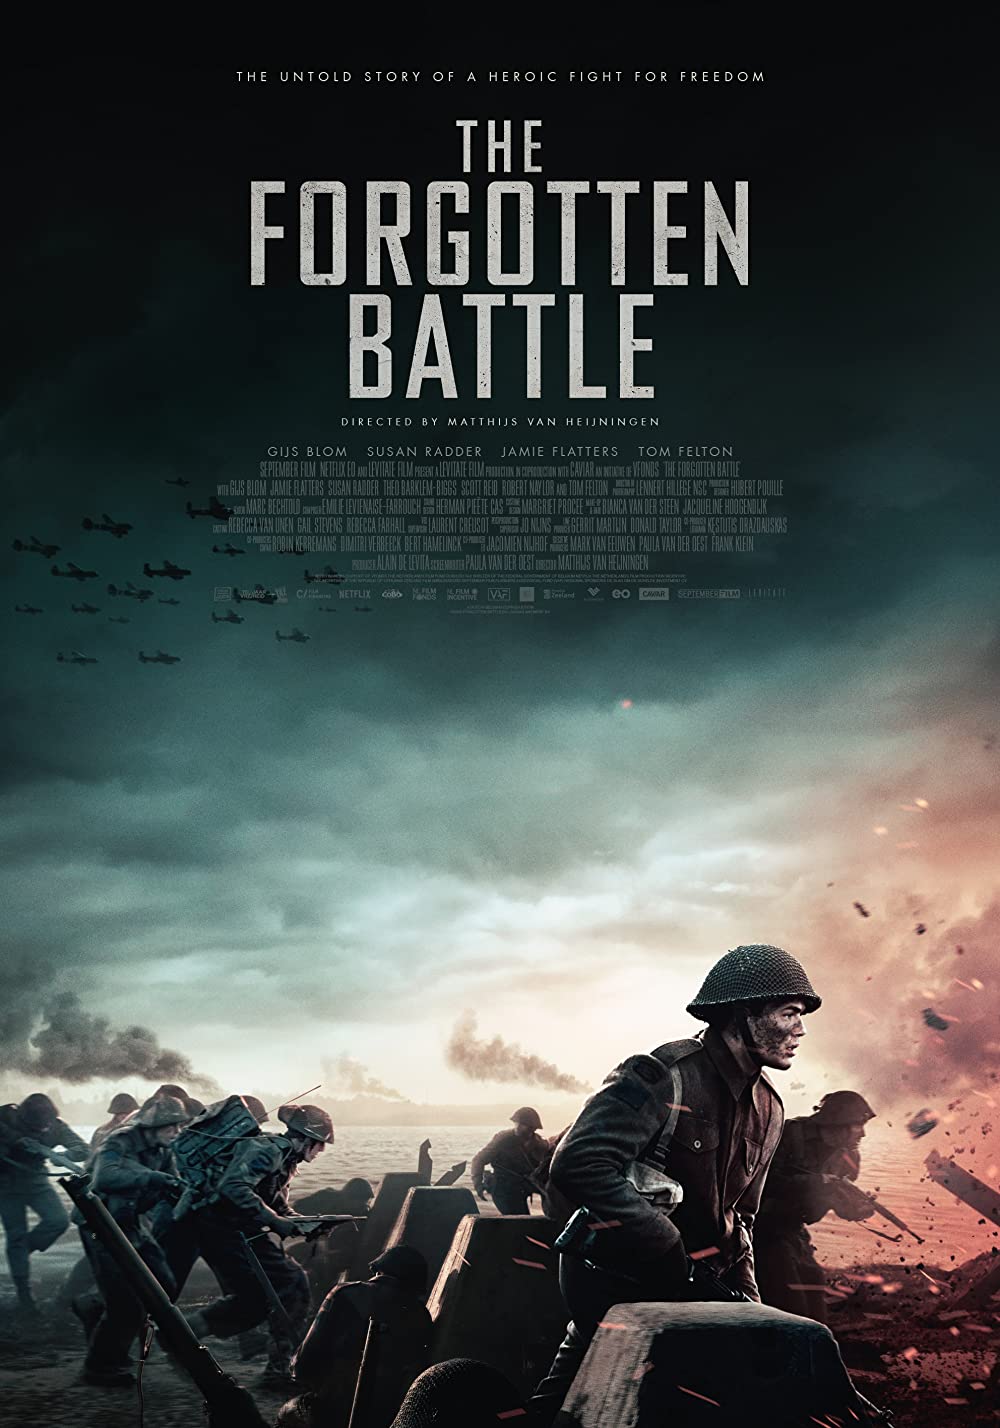 11 Film terbaik Netflix kisahkan perang, penuh aksi heroik